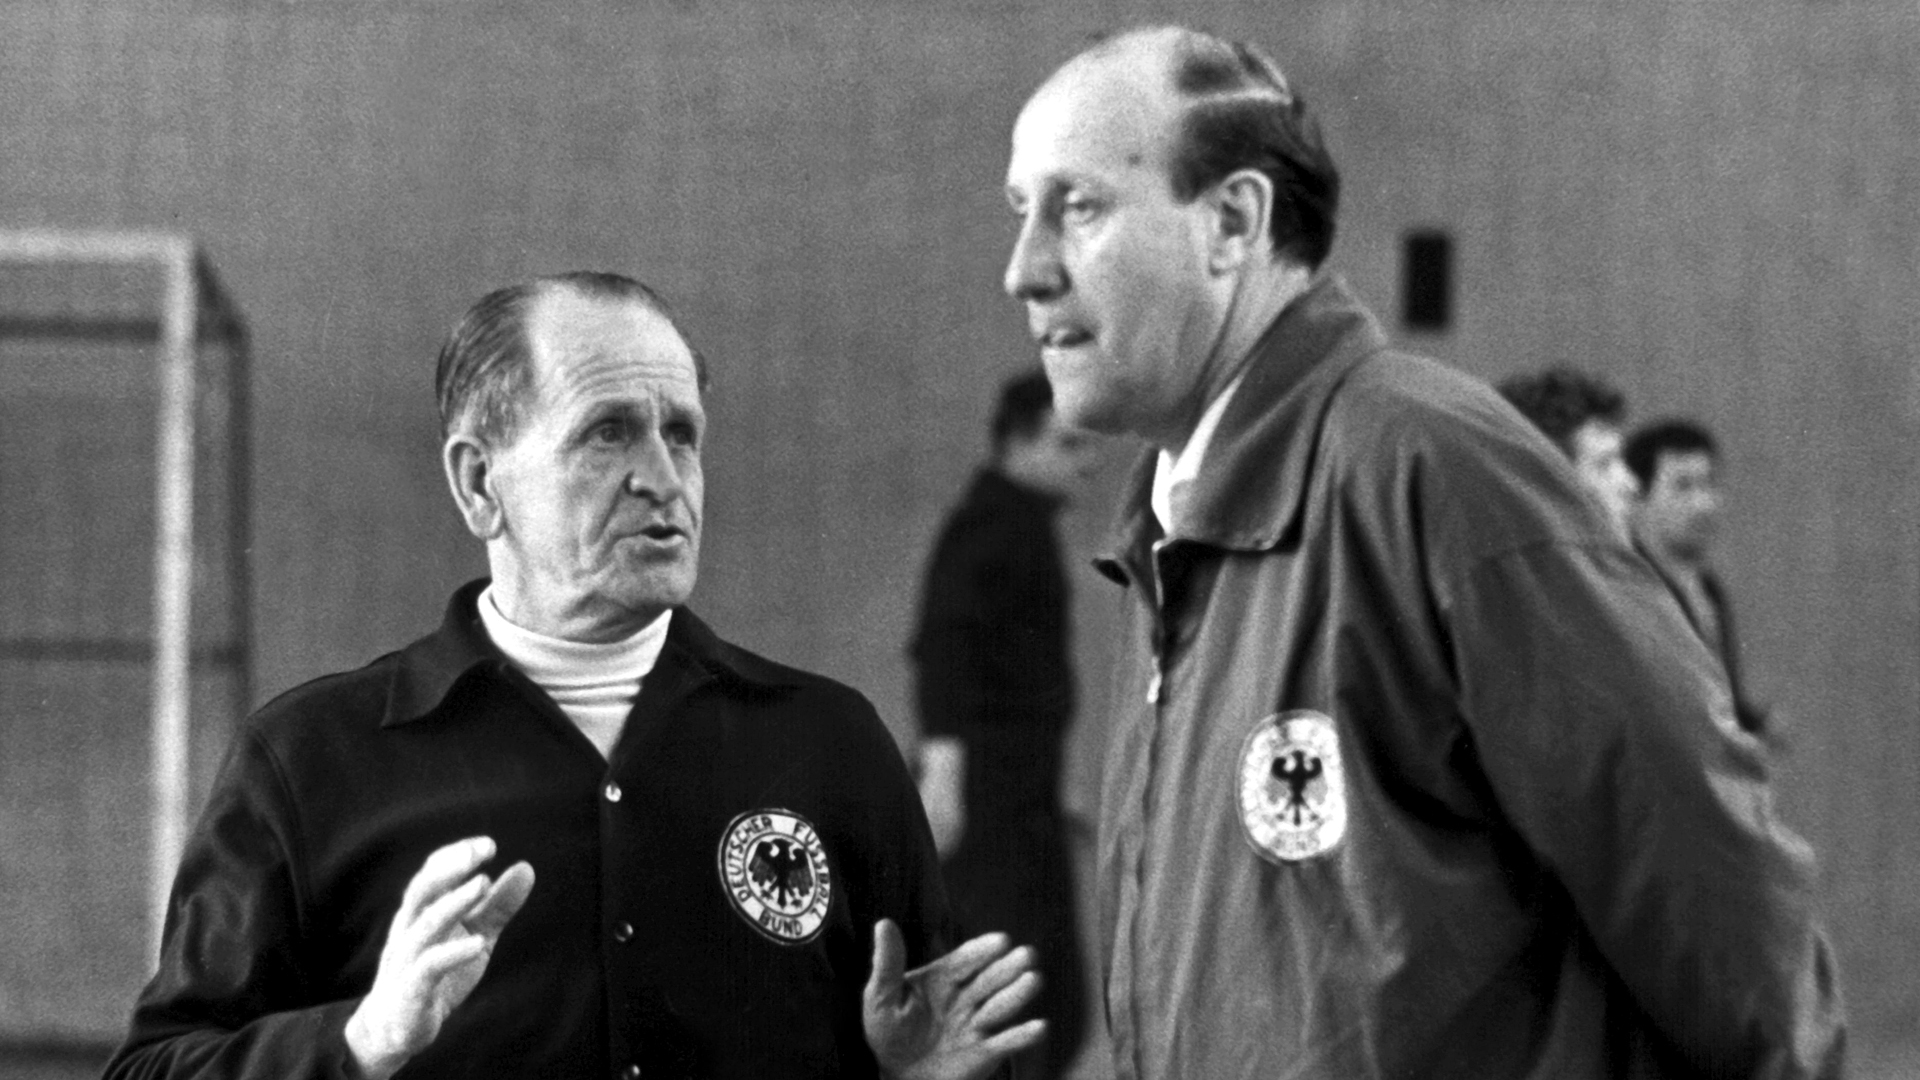 Bundestrainer-Asistent Helmut Schön (r.) im Gespräch mit seinem Chef Sepp Herberger um 1963